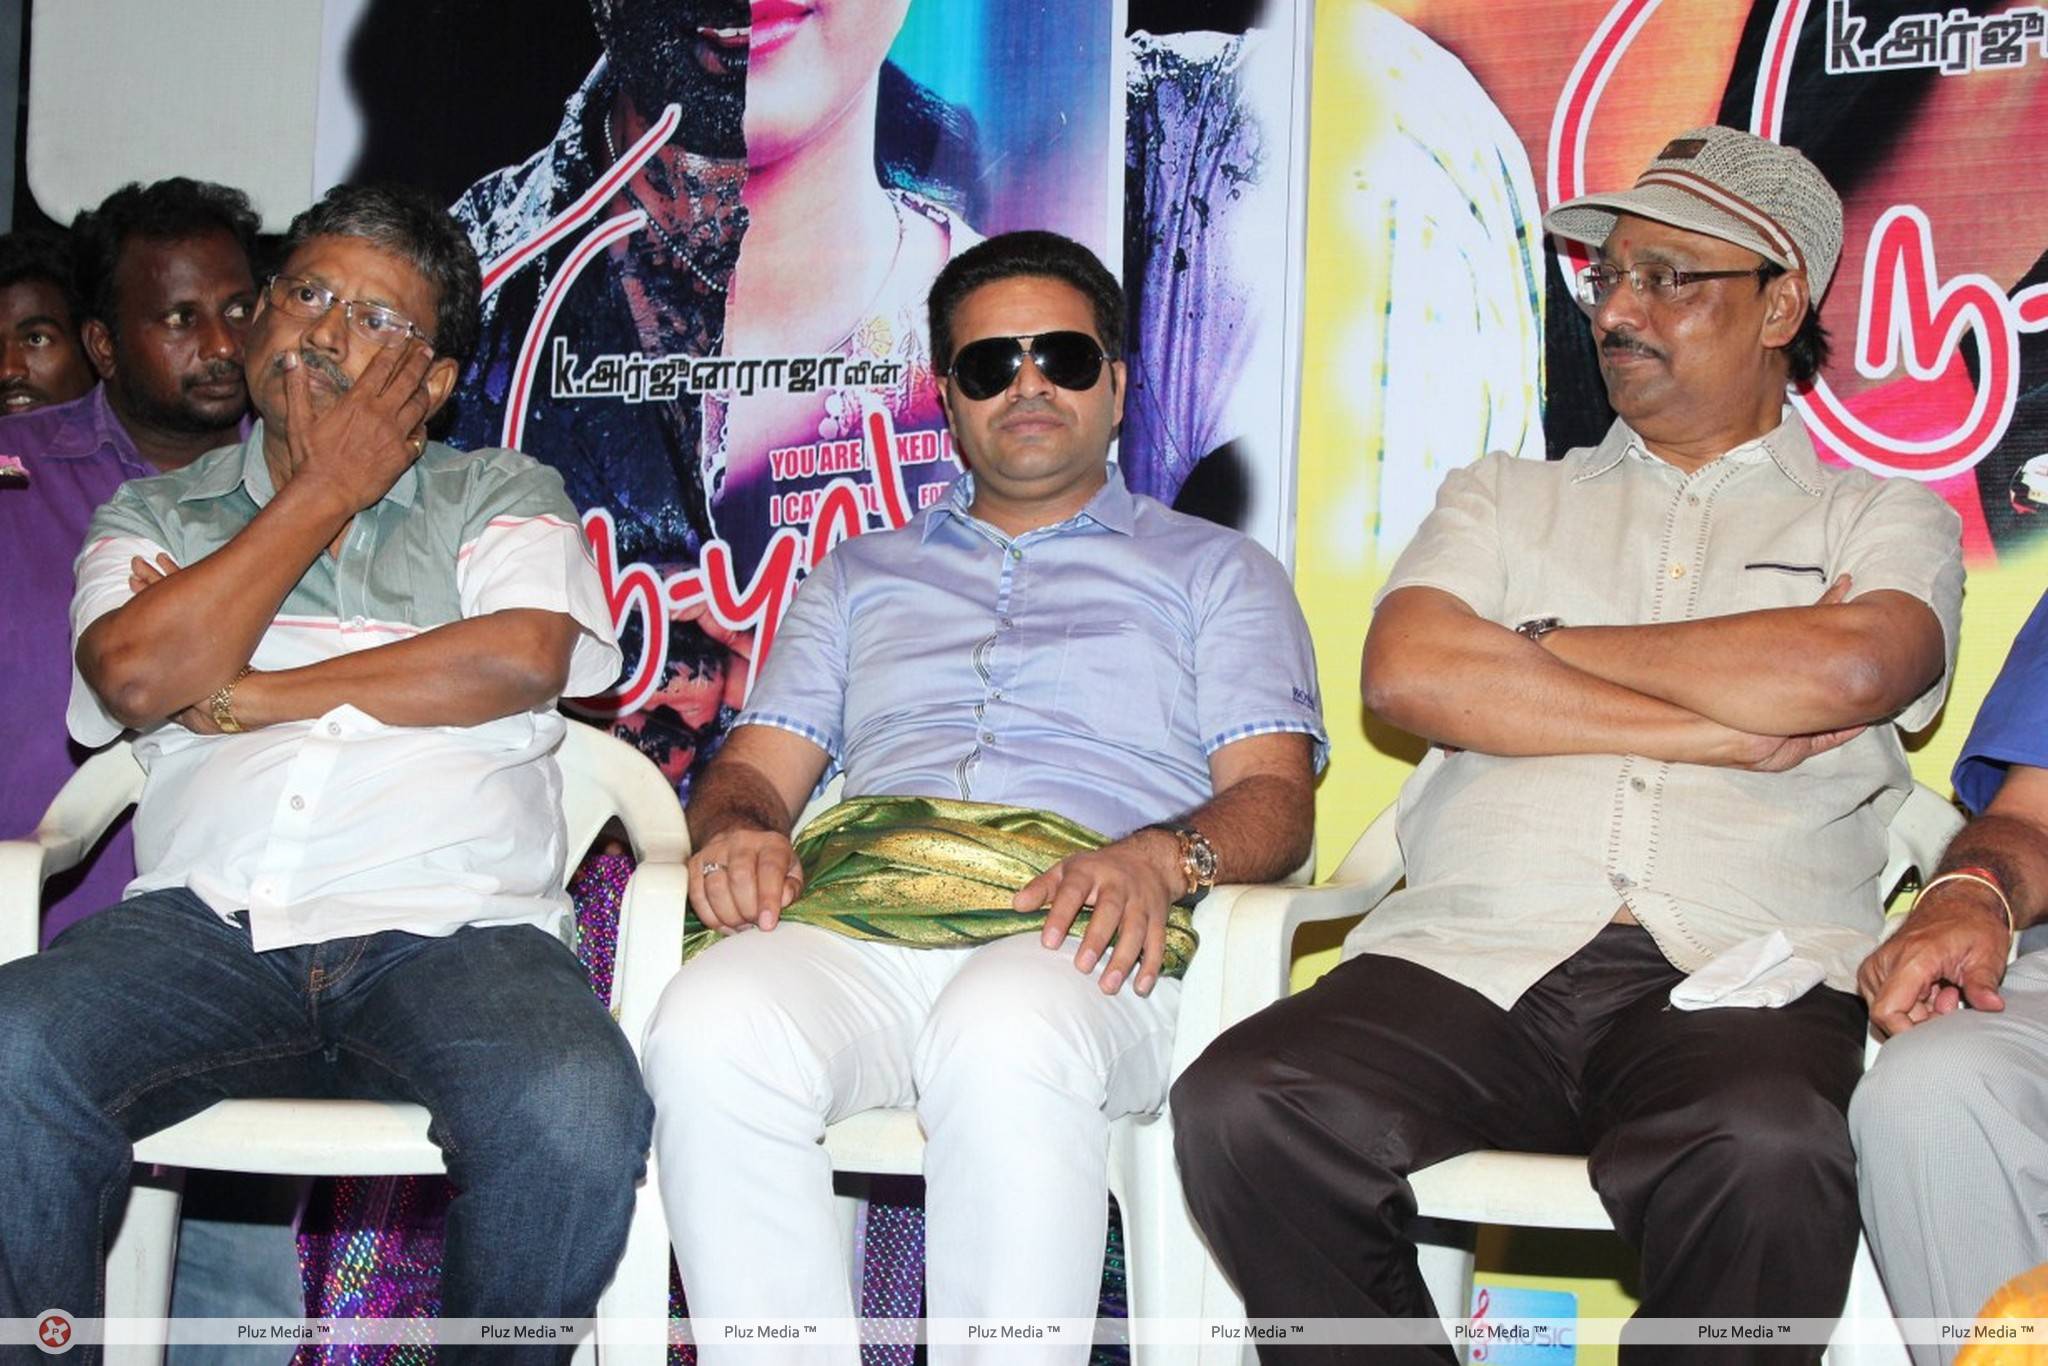 Thiruppugal Movie Audio Launch Stiils | Picture 443645